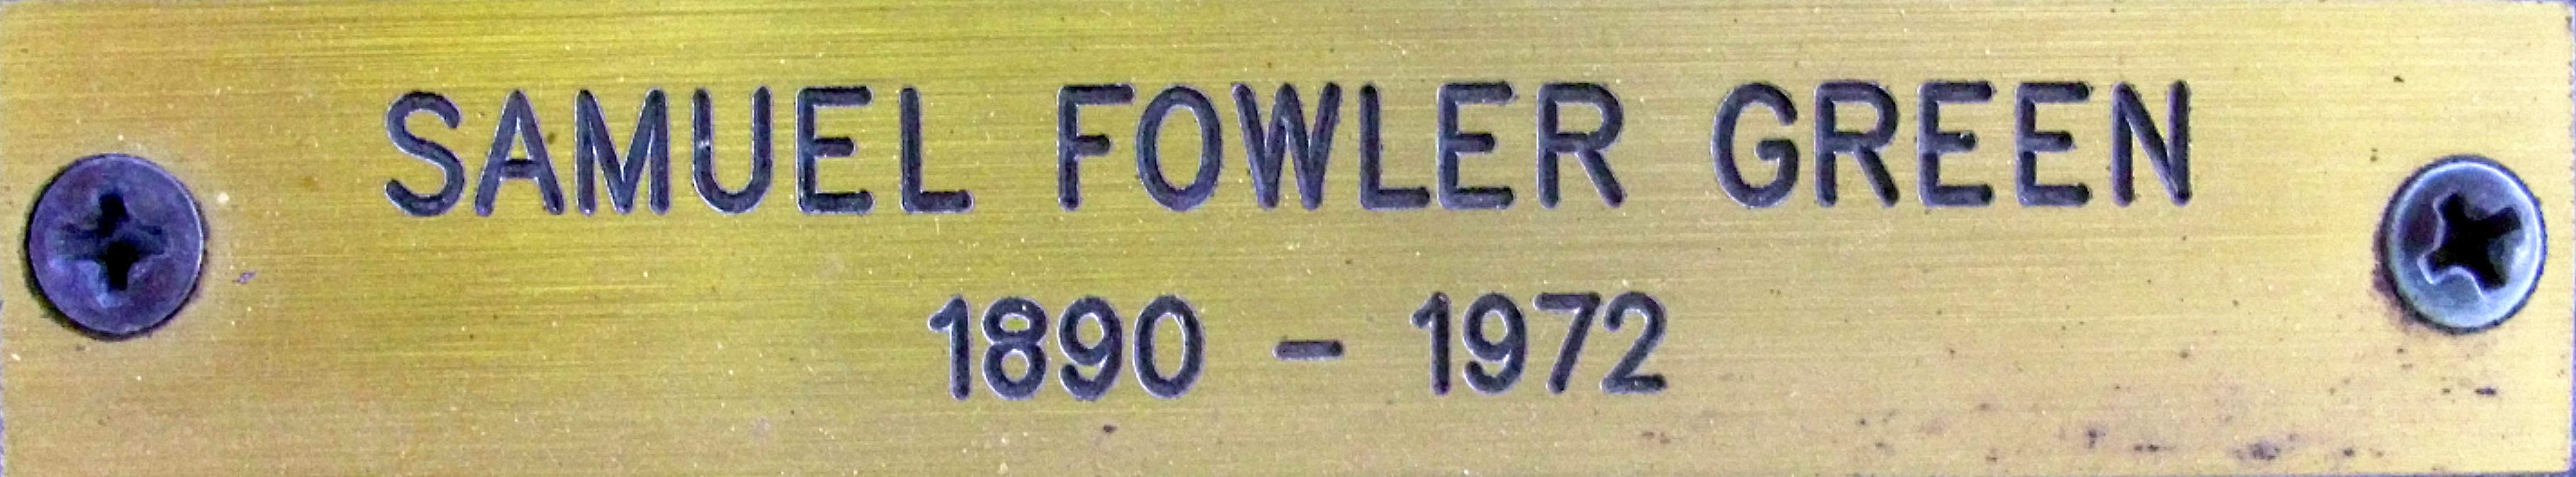 SAMUEL FOWLER GREEN plate